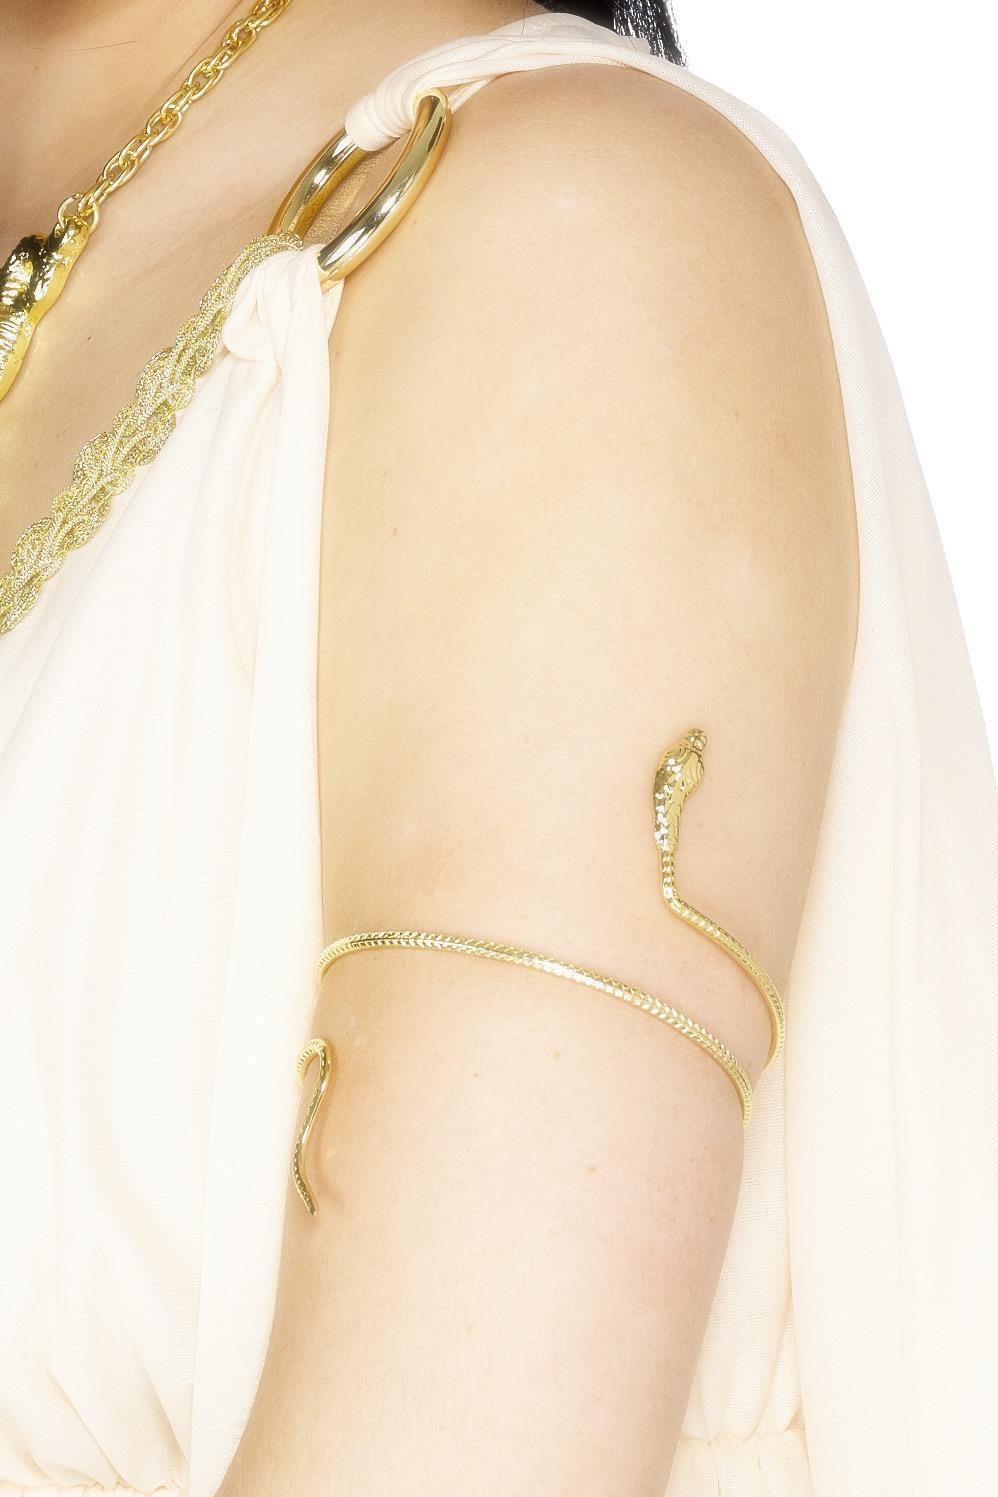 Egyptian Snake Bracelet Gold